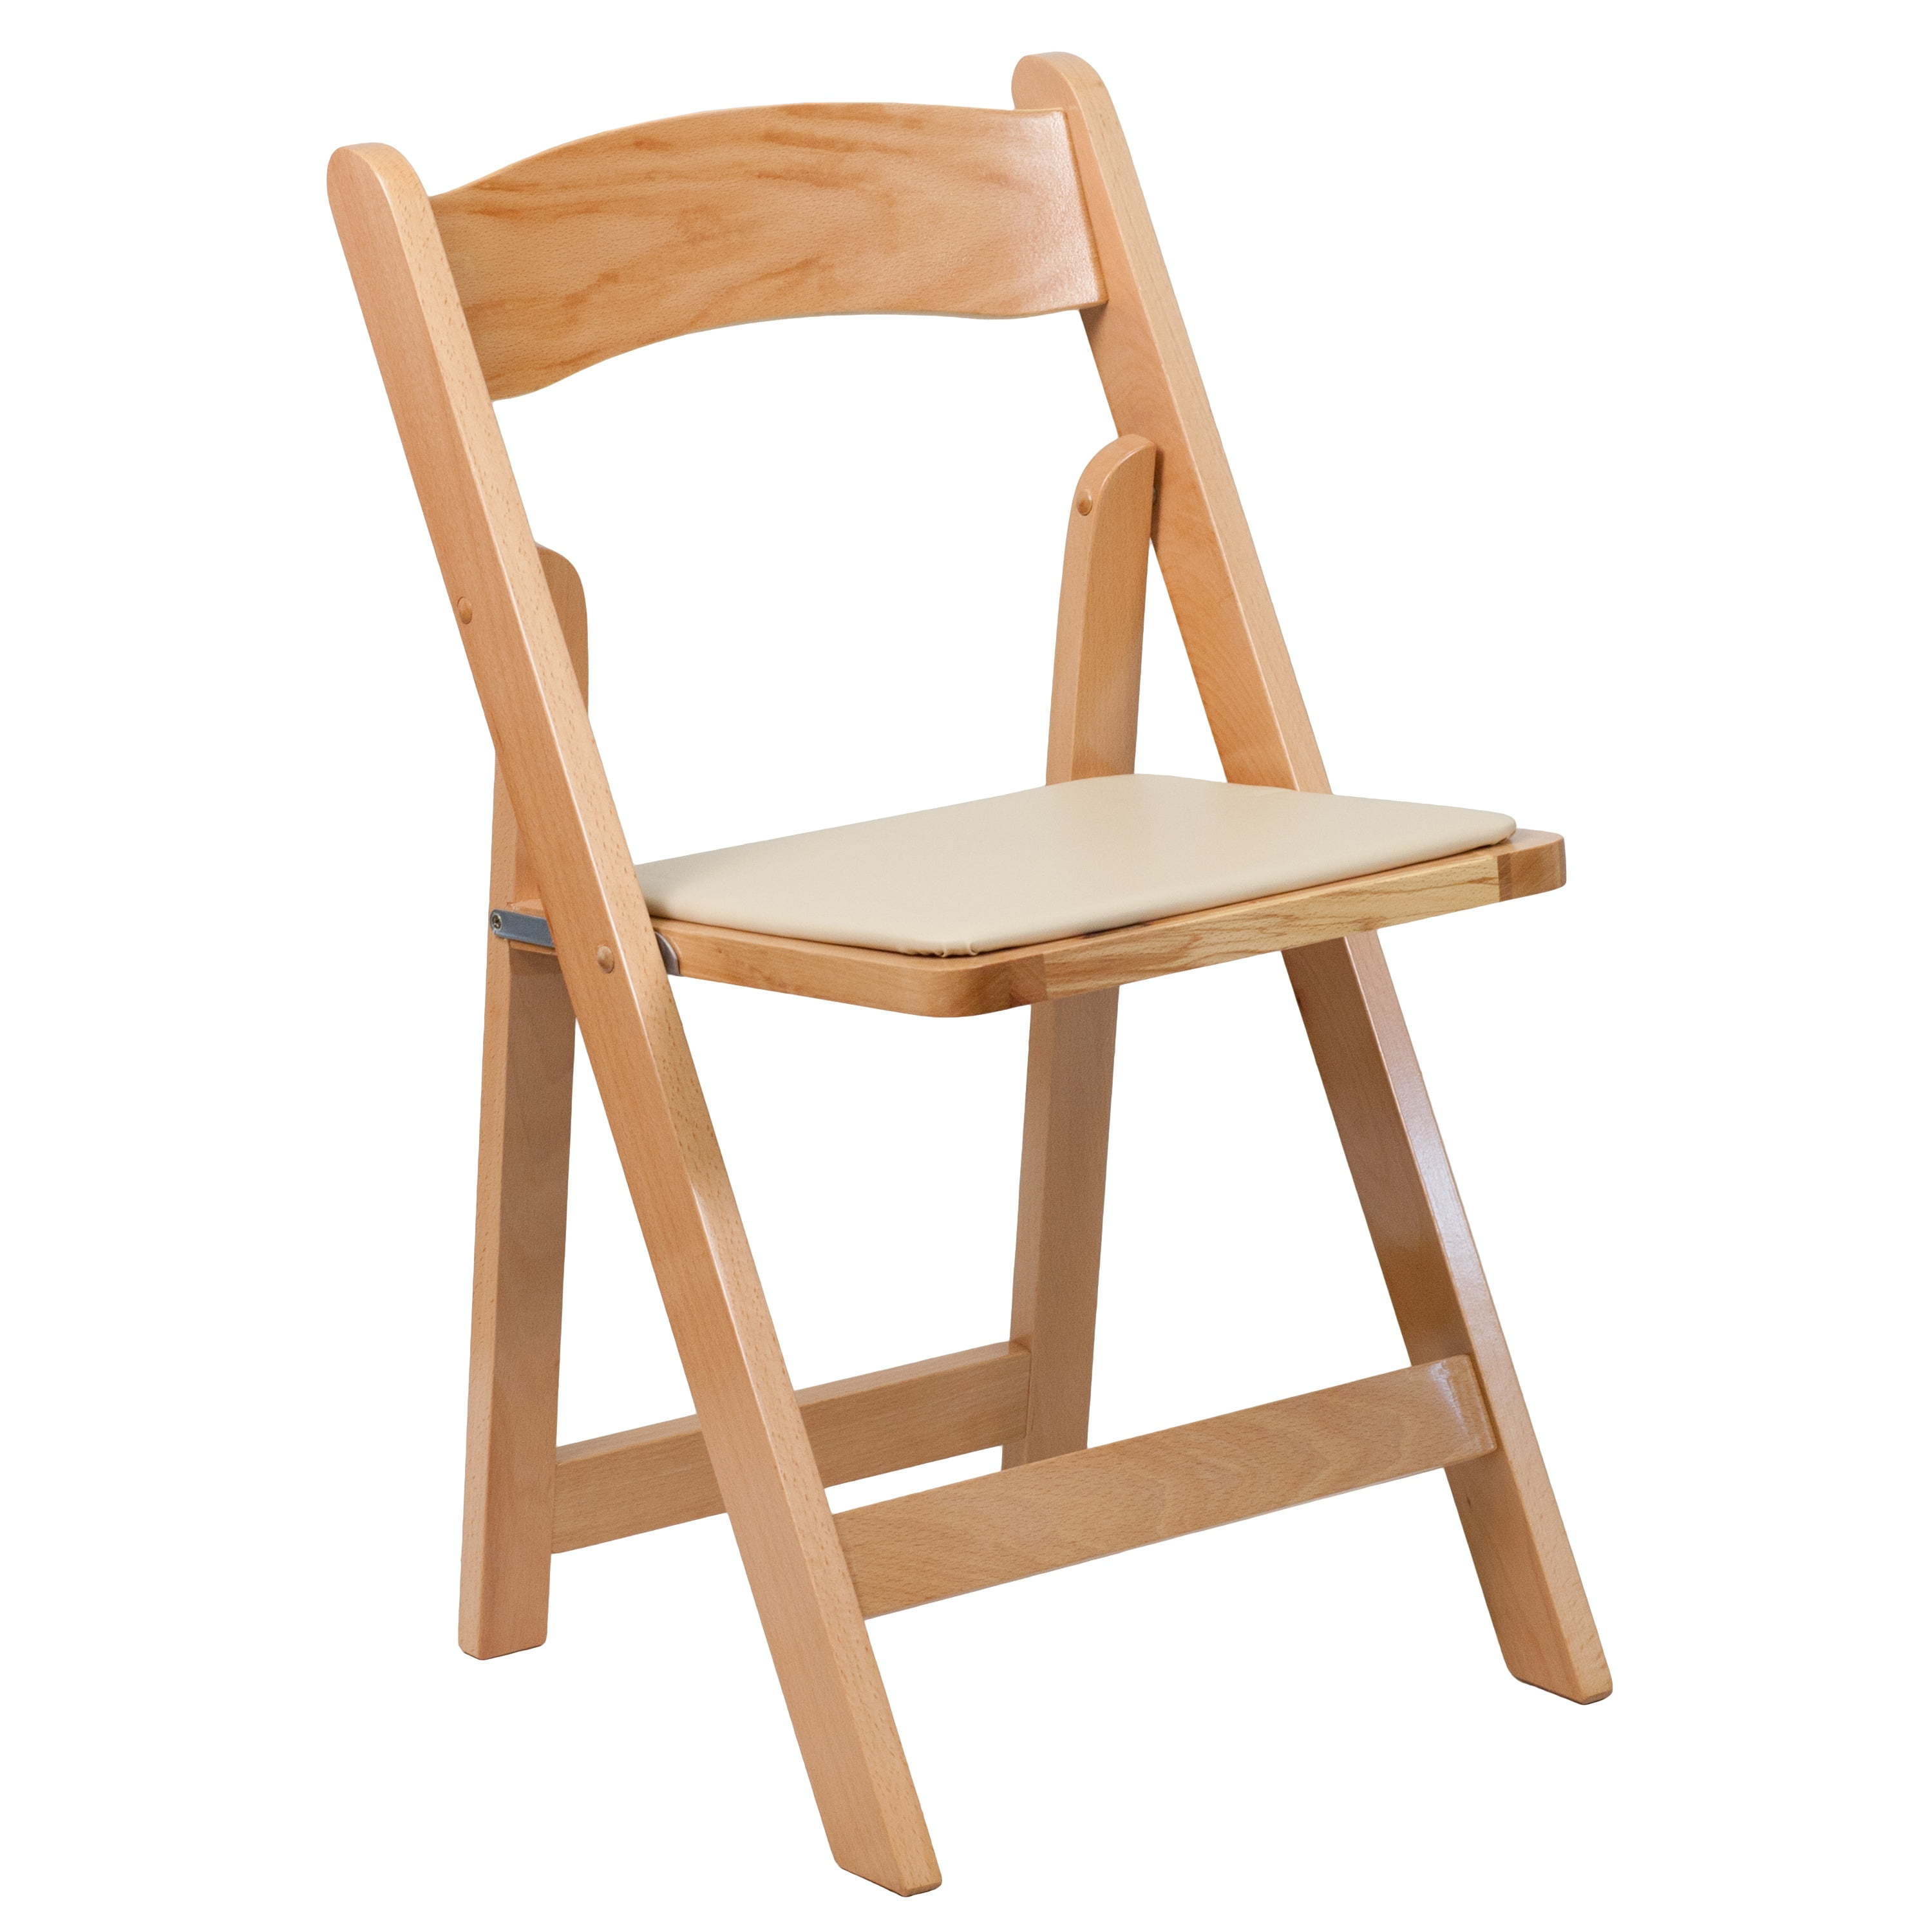 Куплю складные деревянные стулья. Складные деревянные стулья. Складной стул дерево. Стул раскладной деревянный. Стул складной деревянный со спинкой.